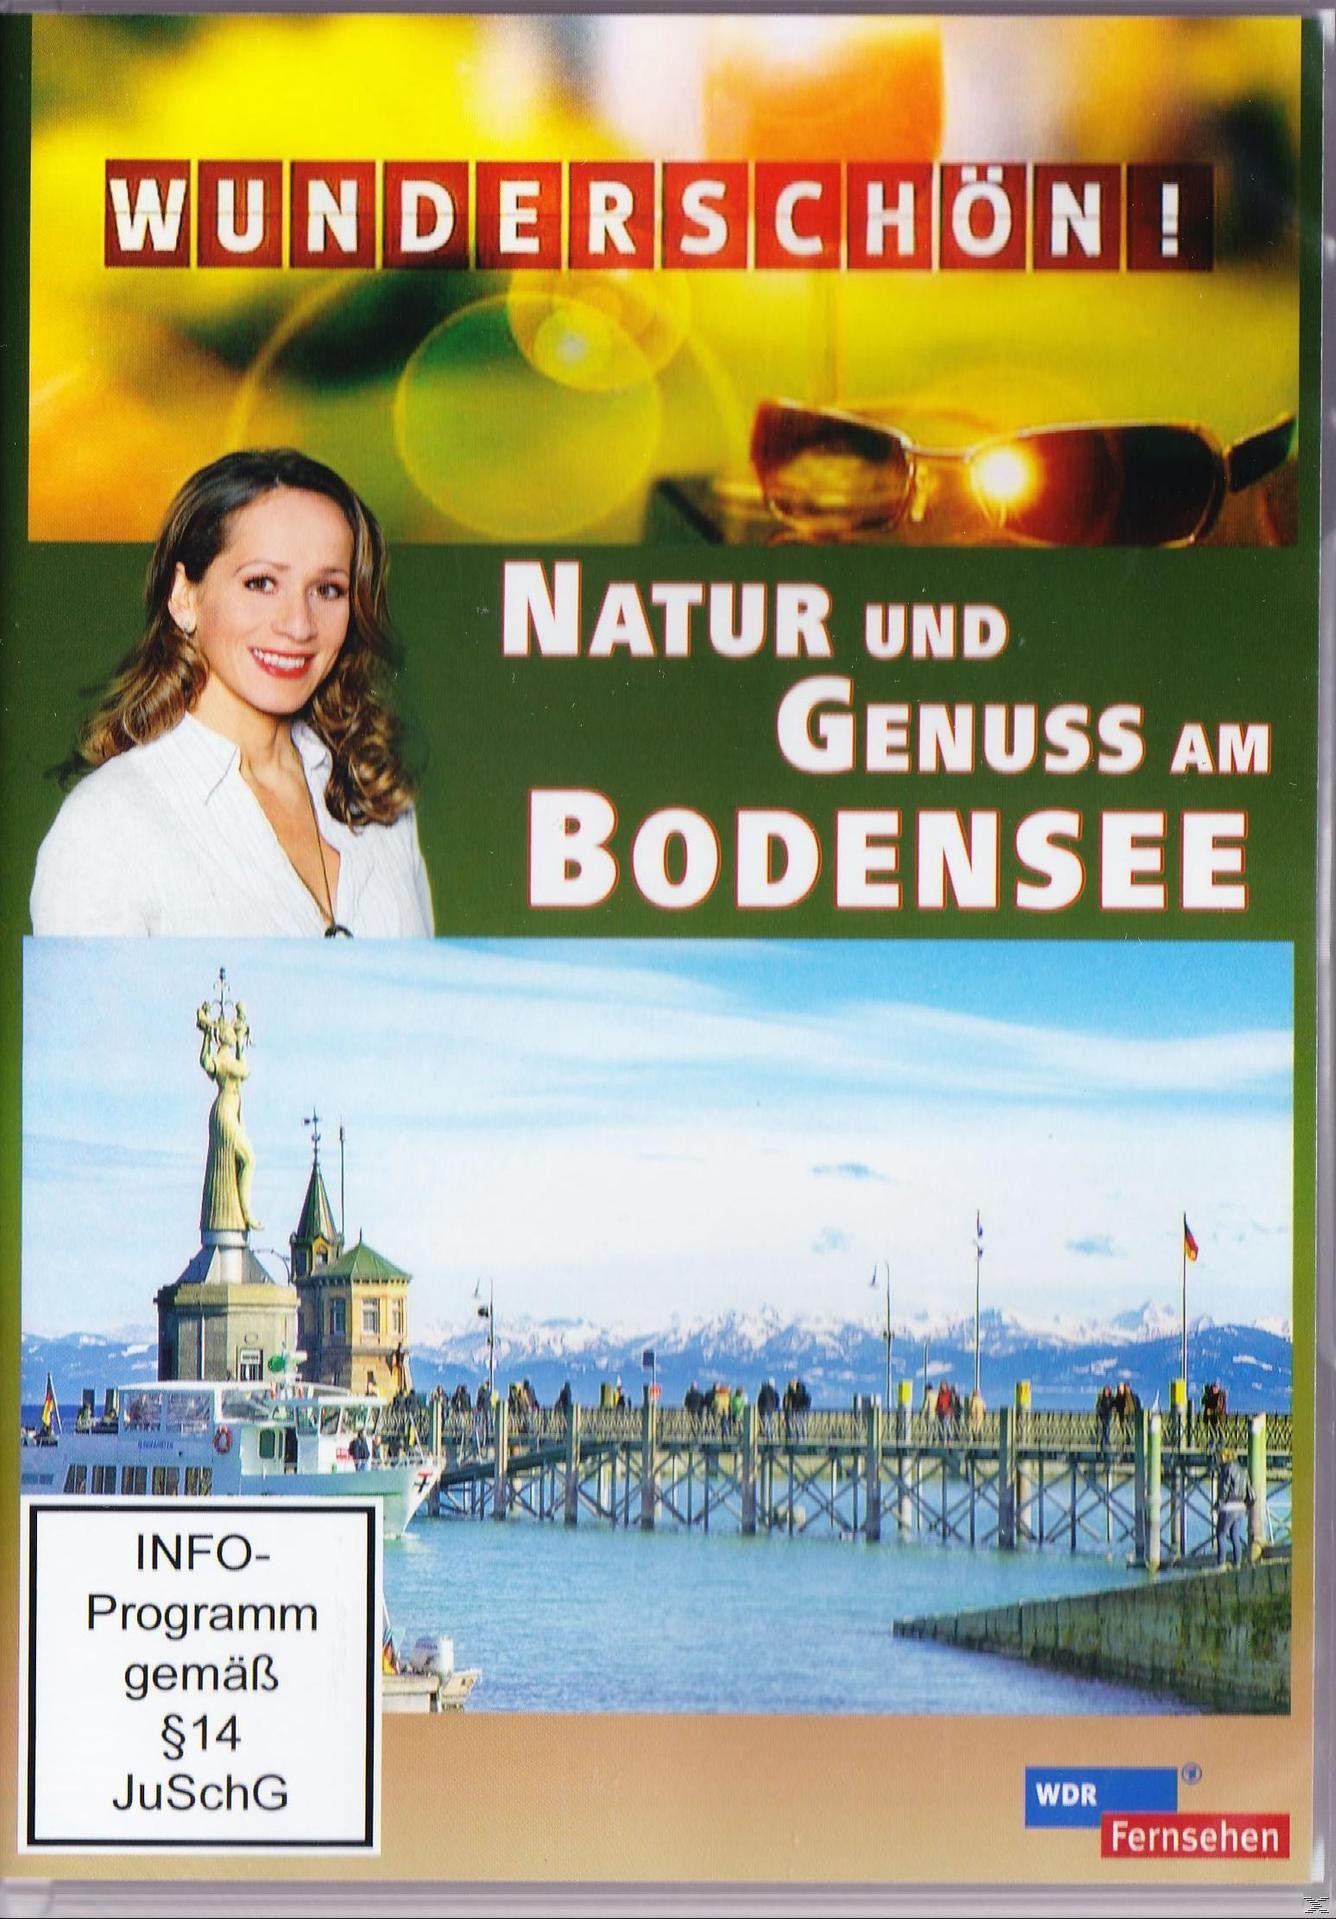 am Wunderschön! - Genuss und Bodensee Natur DVD